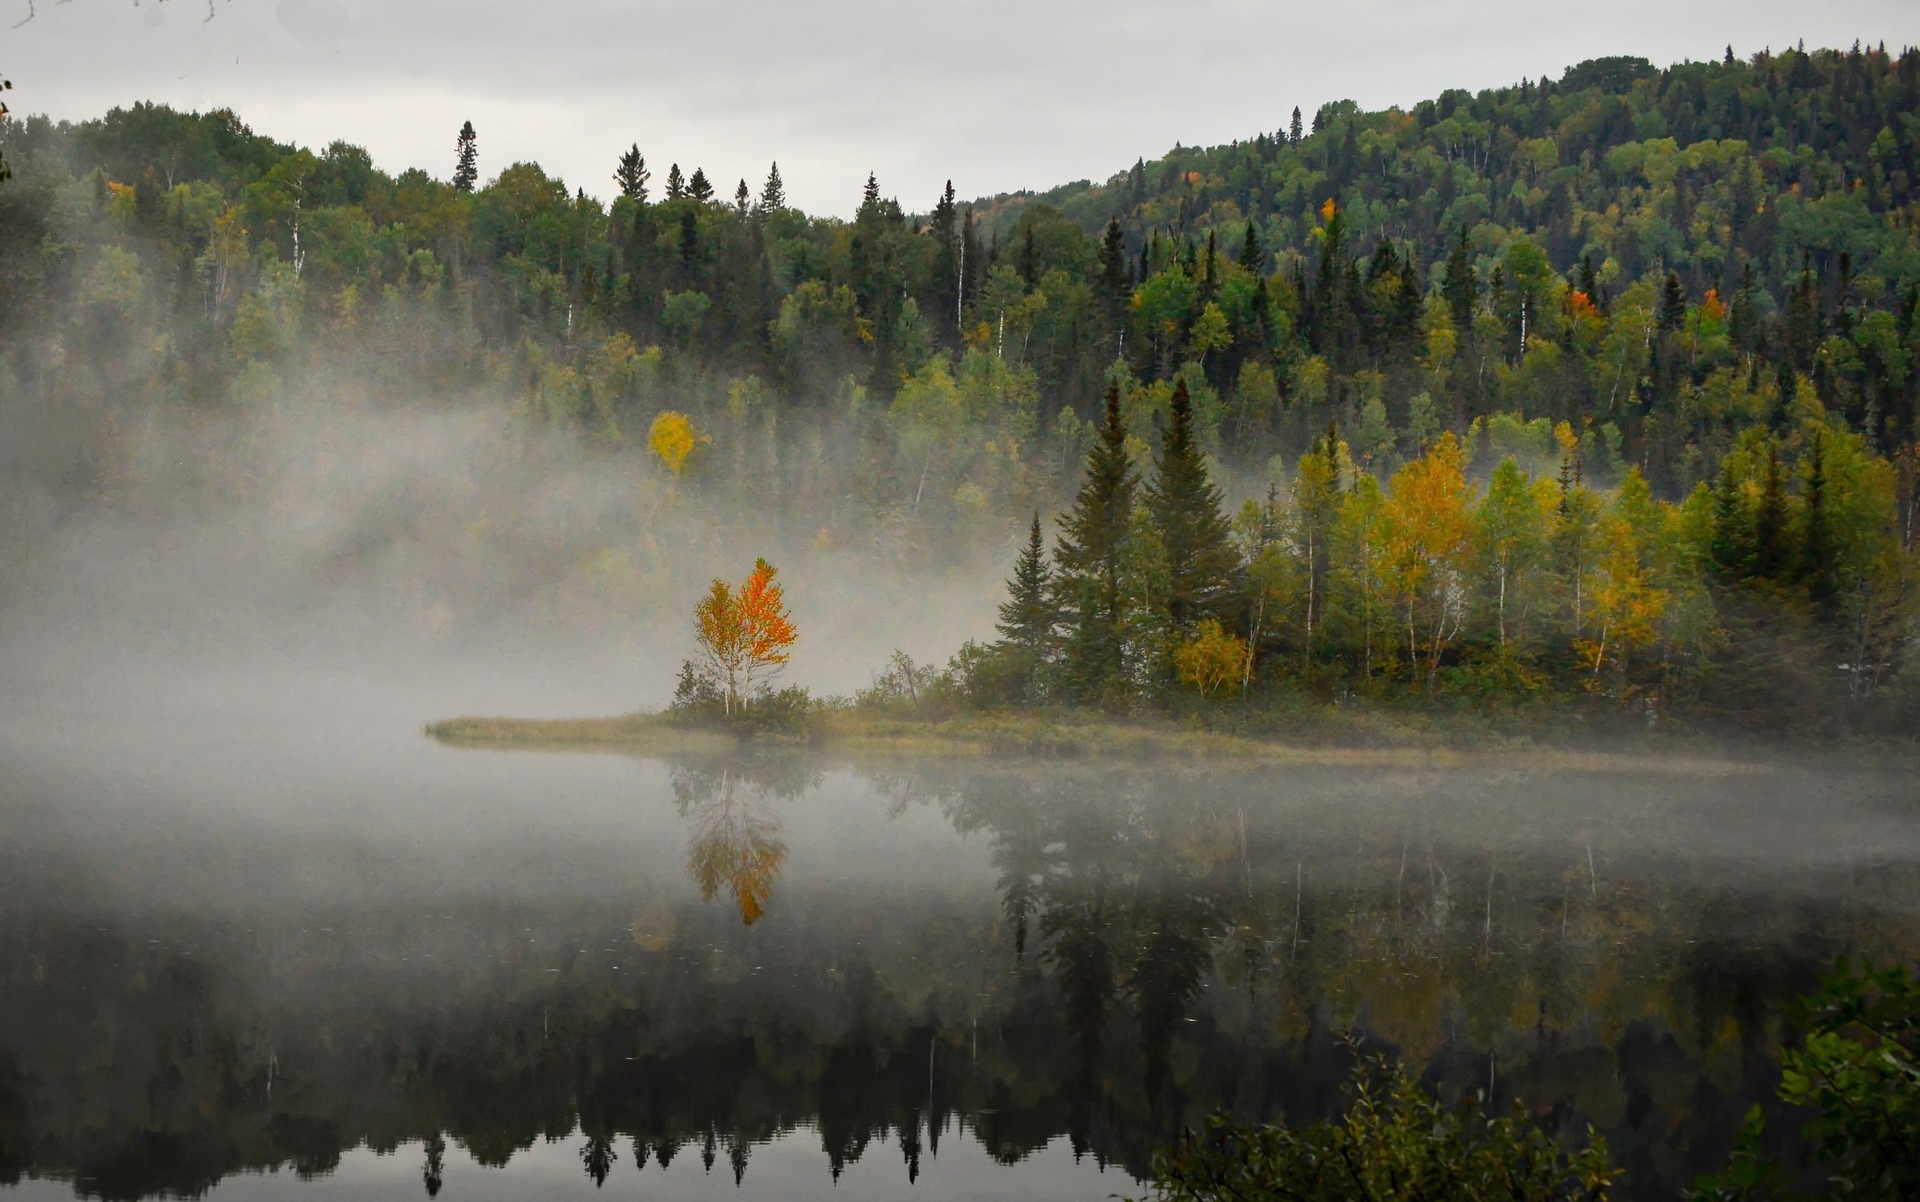 A világ legszebb helyei: Bnaff Nemzeti Park, kanada